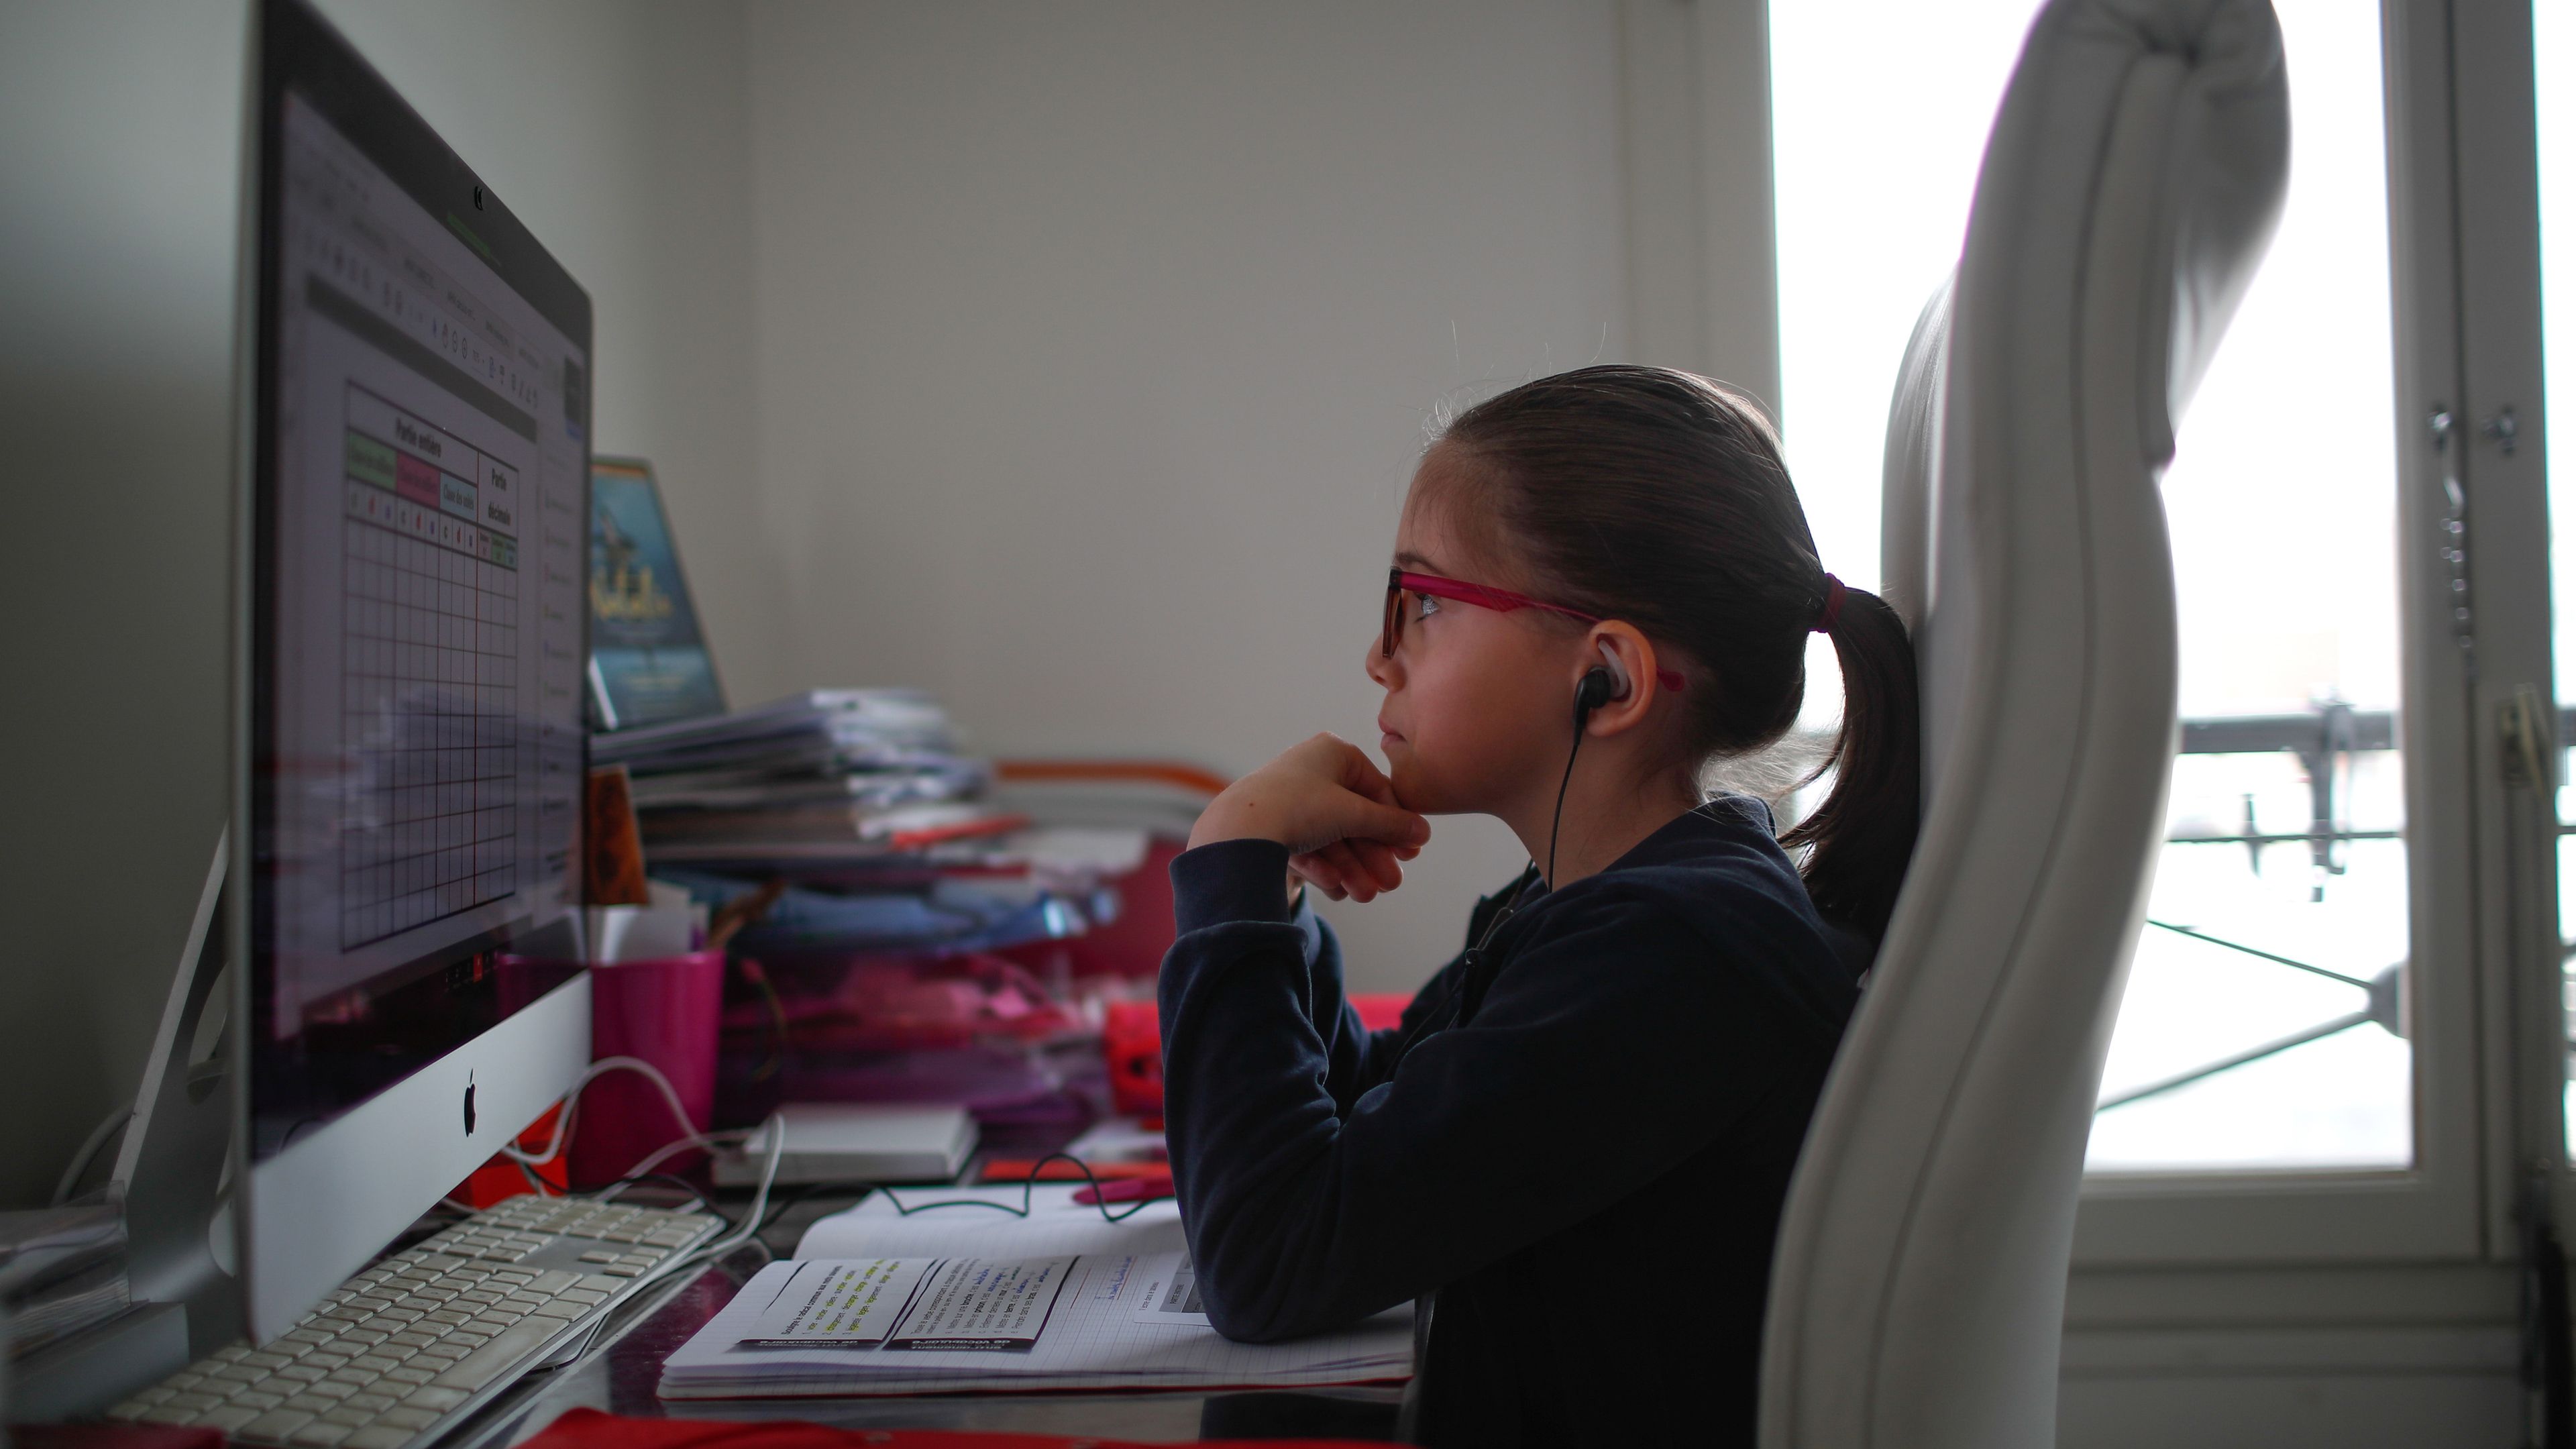 Una niña asiste a una clase virtual desde casa por el confinamiento provocado por el COVID-19.